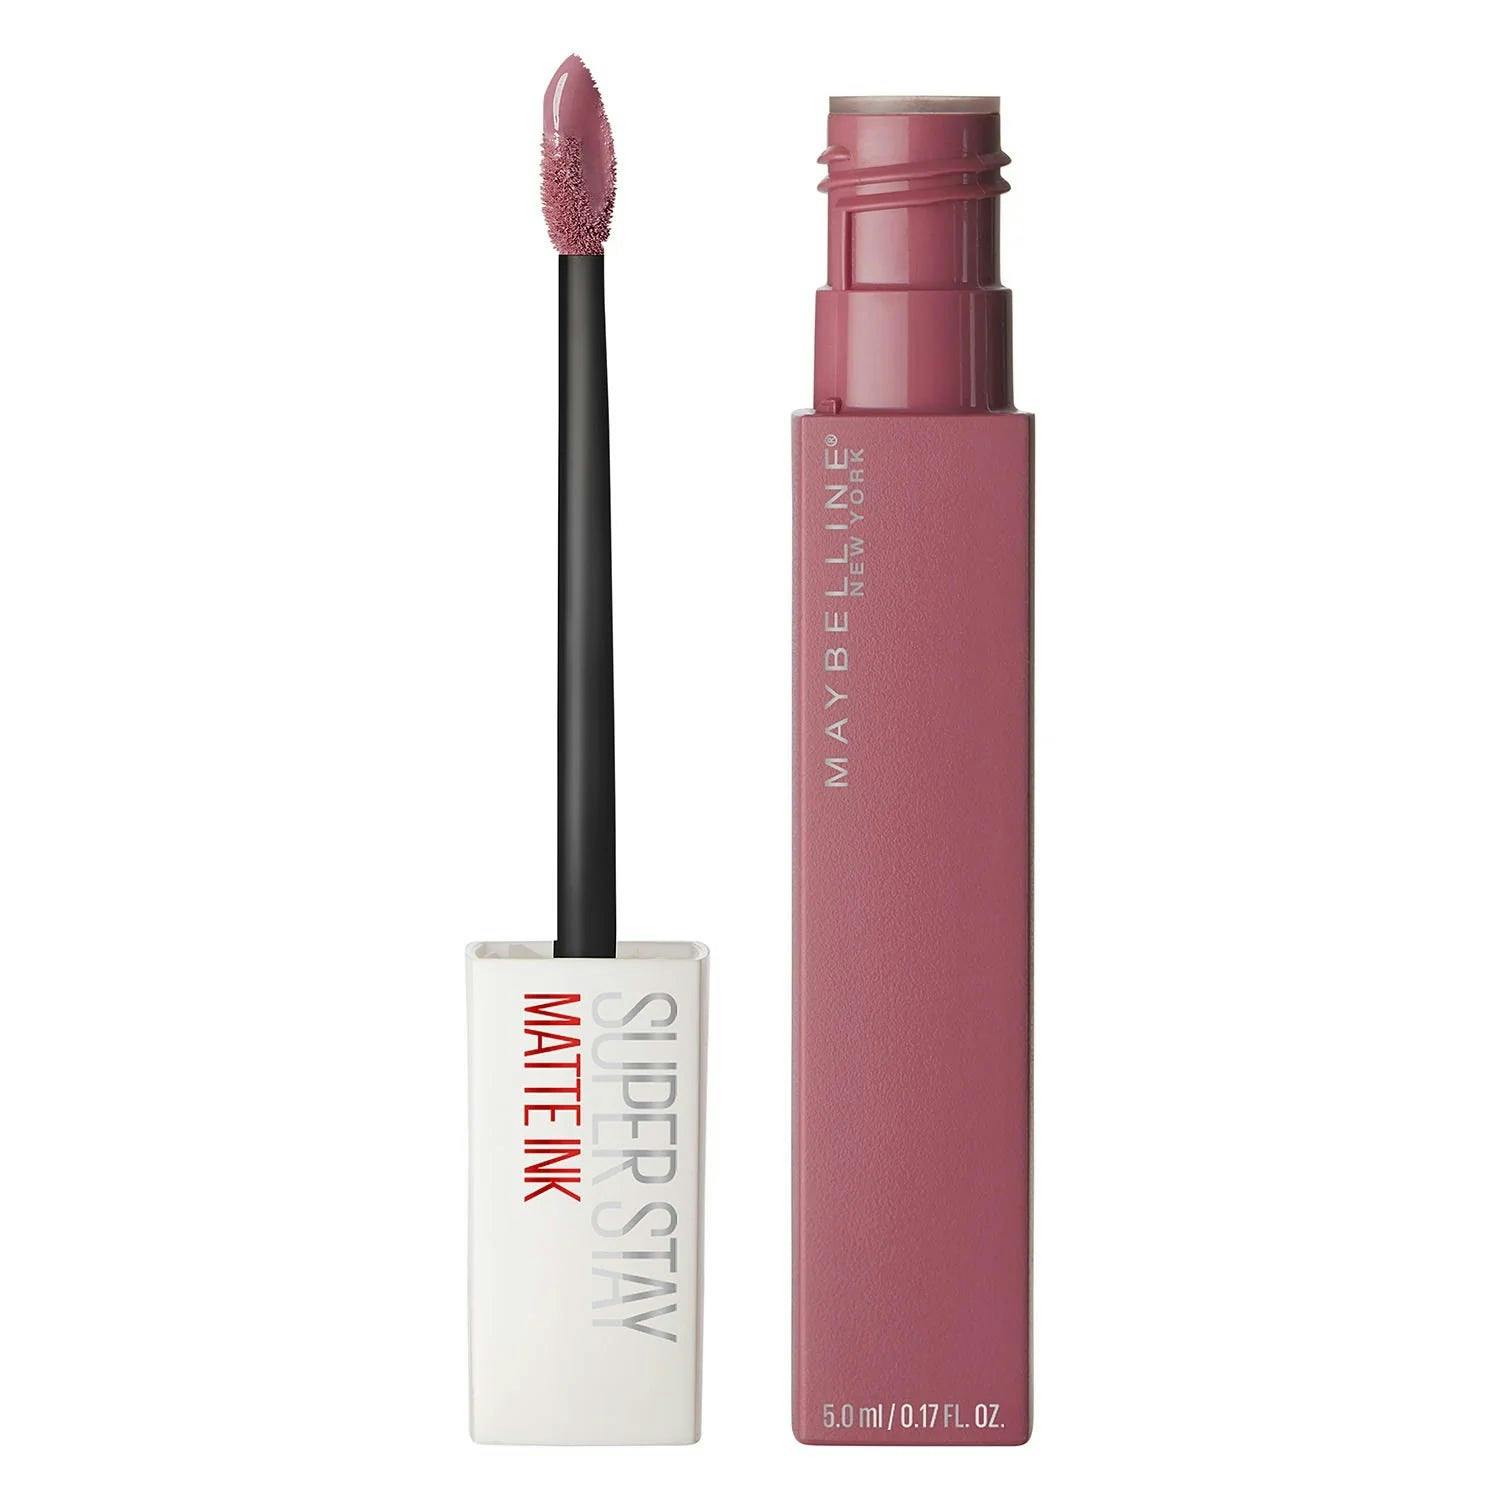 Maybelline Superstay Matte Ink Longwear Liquid Lipstick - Lover15 2.7ml